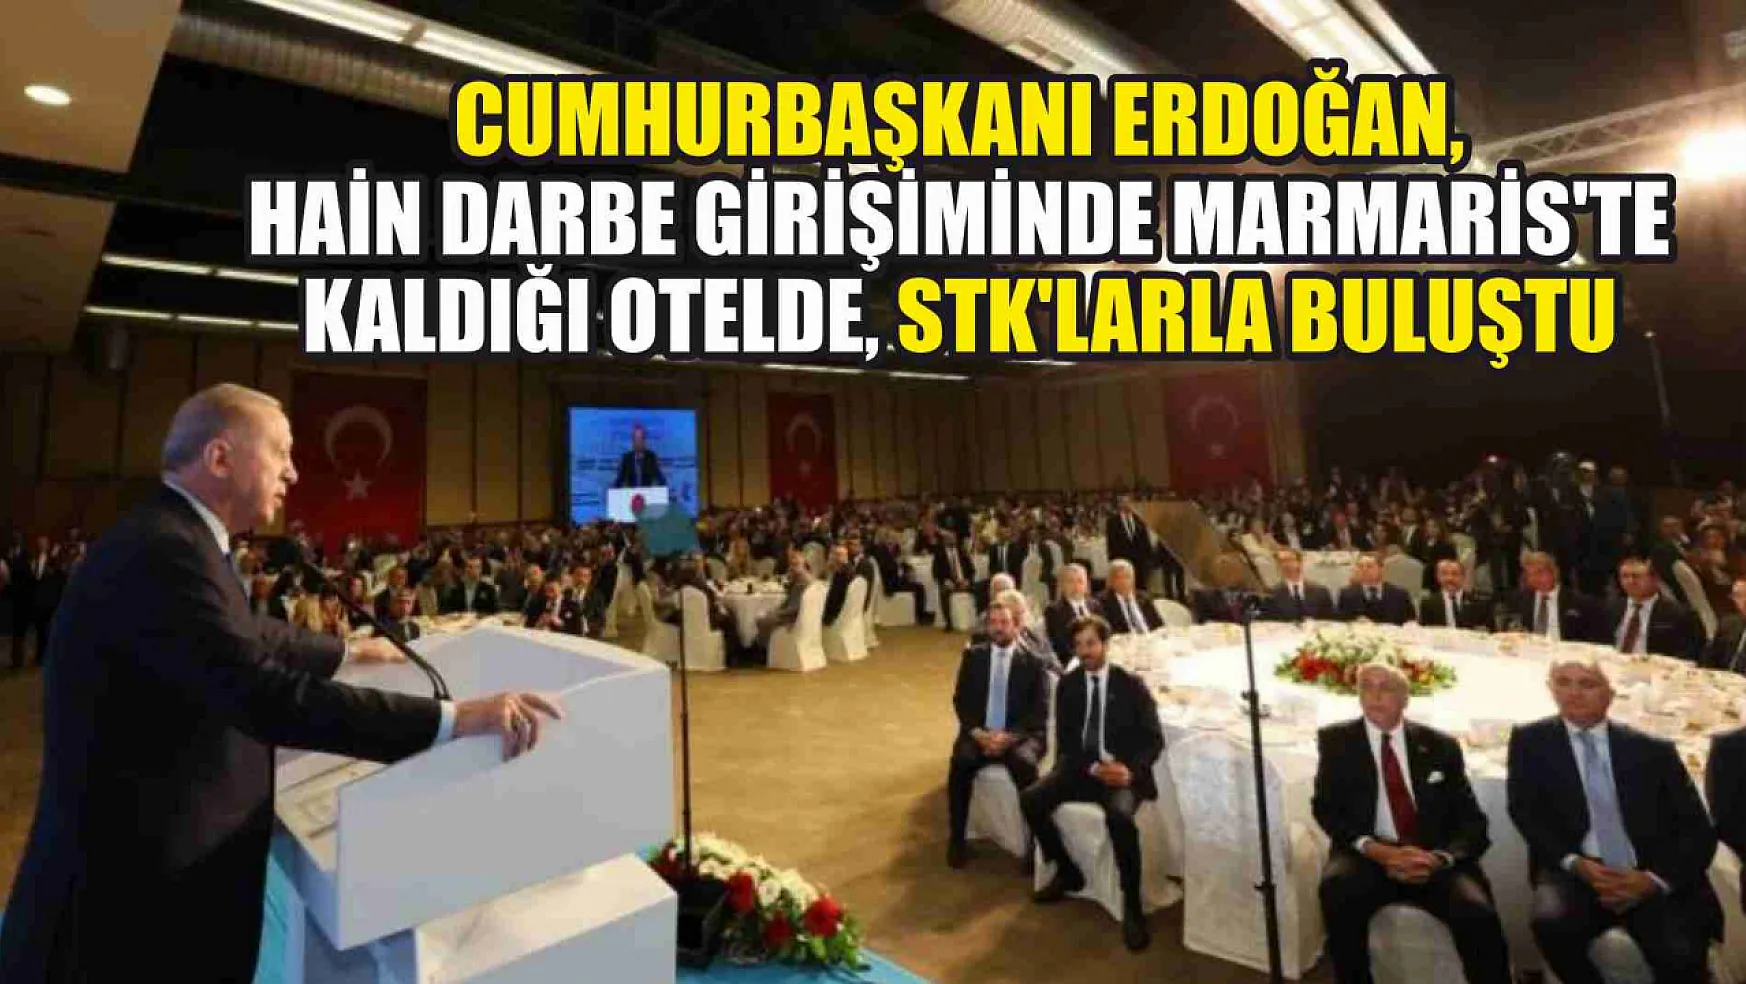 Cumhurbaşkanı Erdoğan STK'larla buluştu